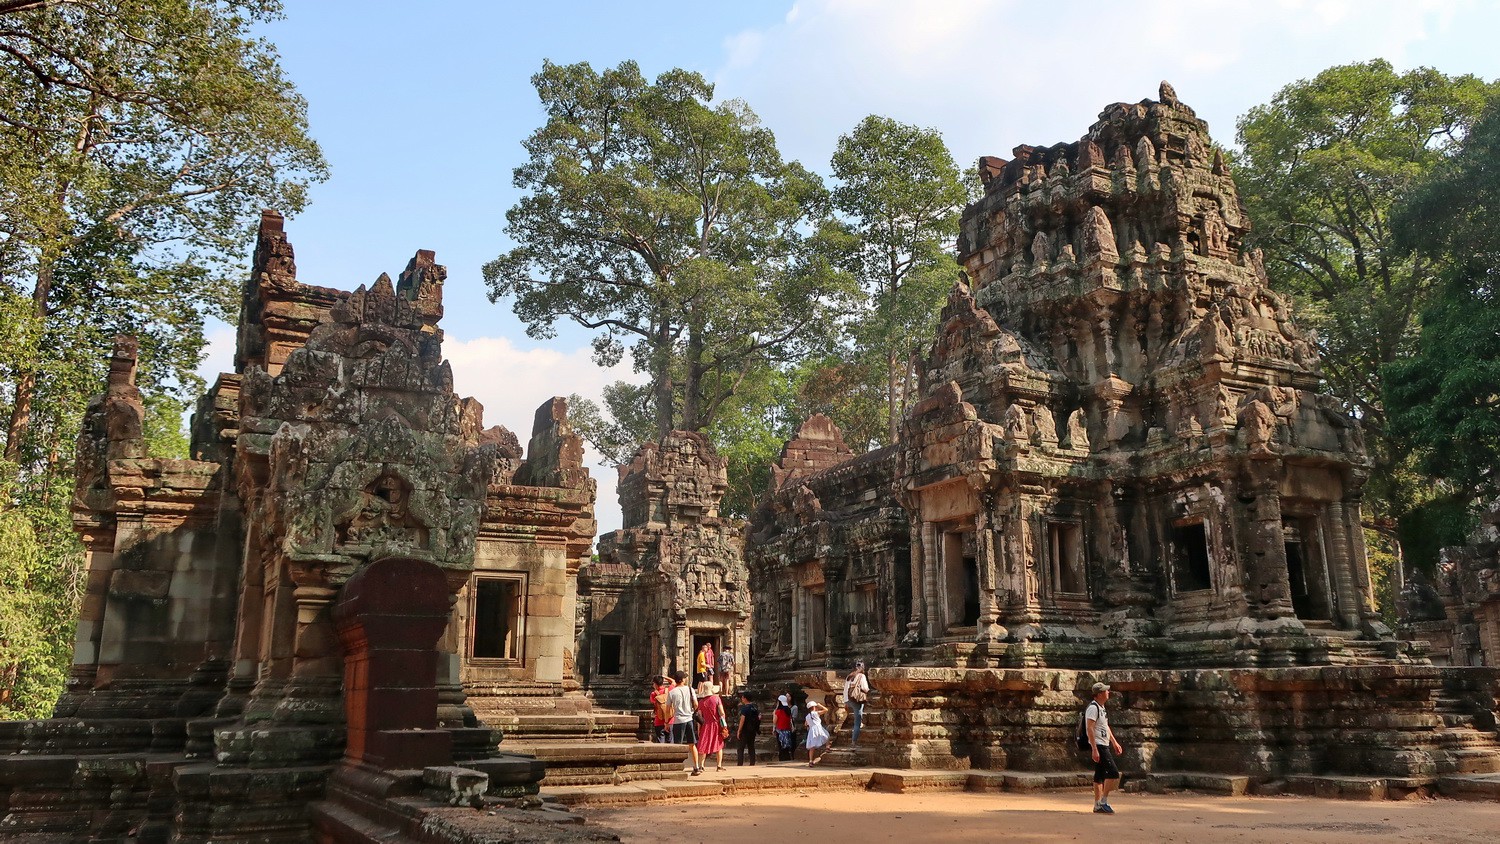 Chau Say Tevoda Ruins few hundred meters east of Angkor Thom